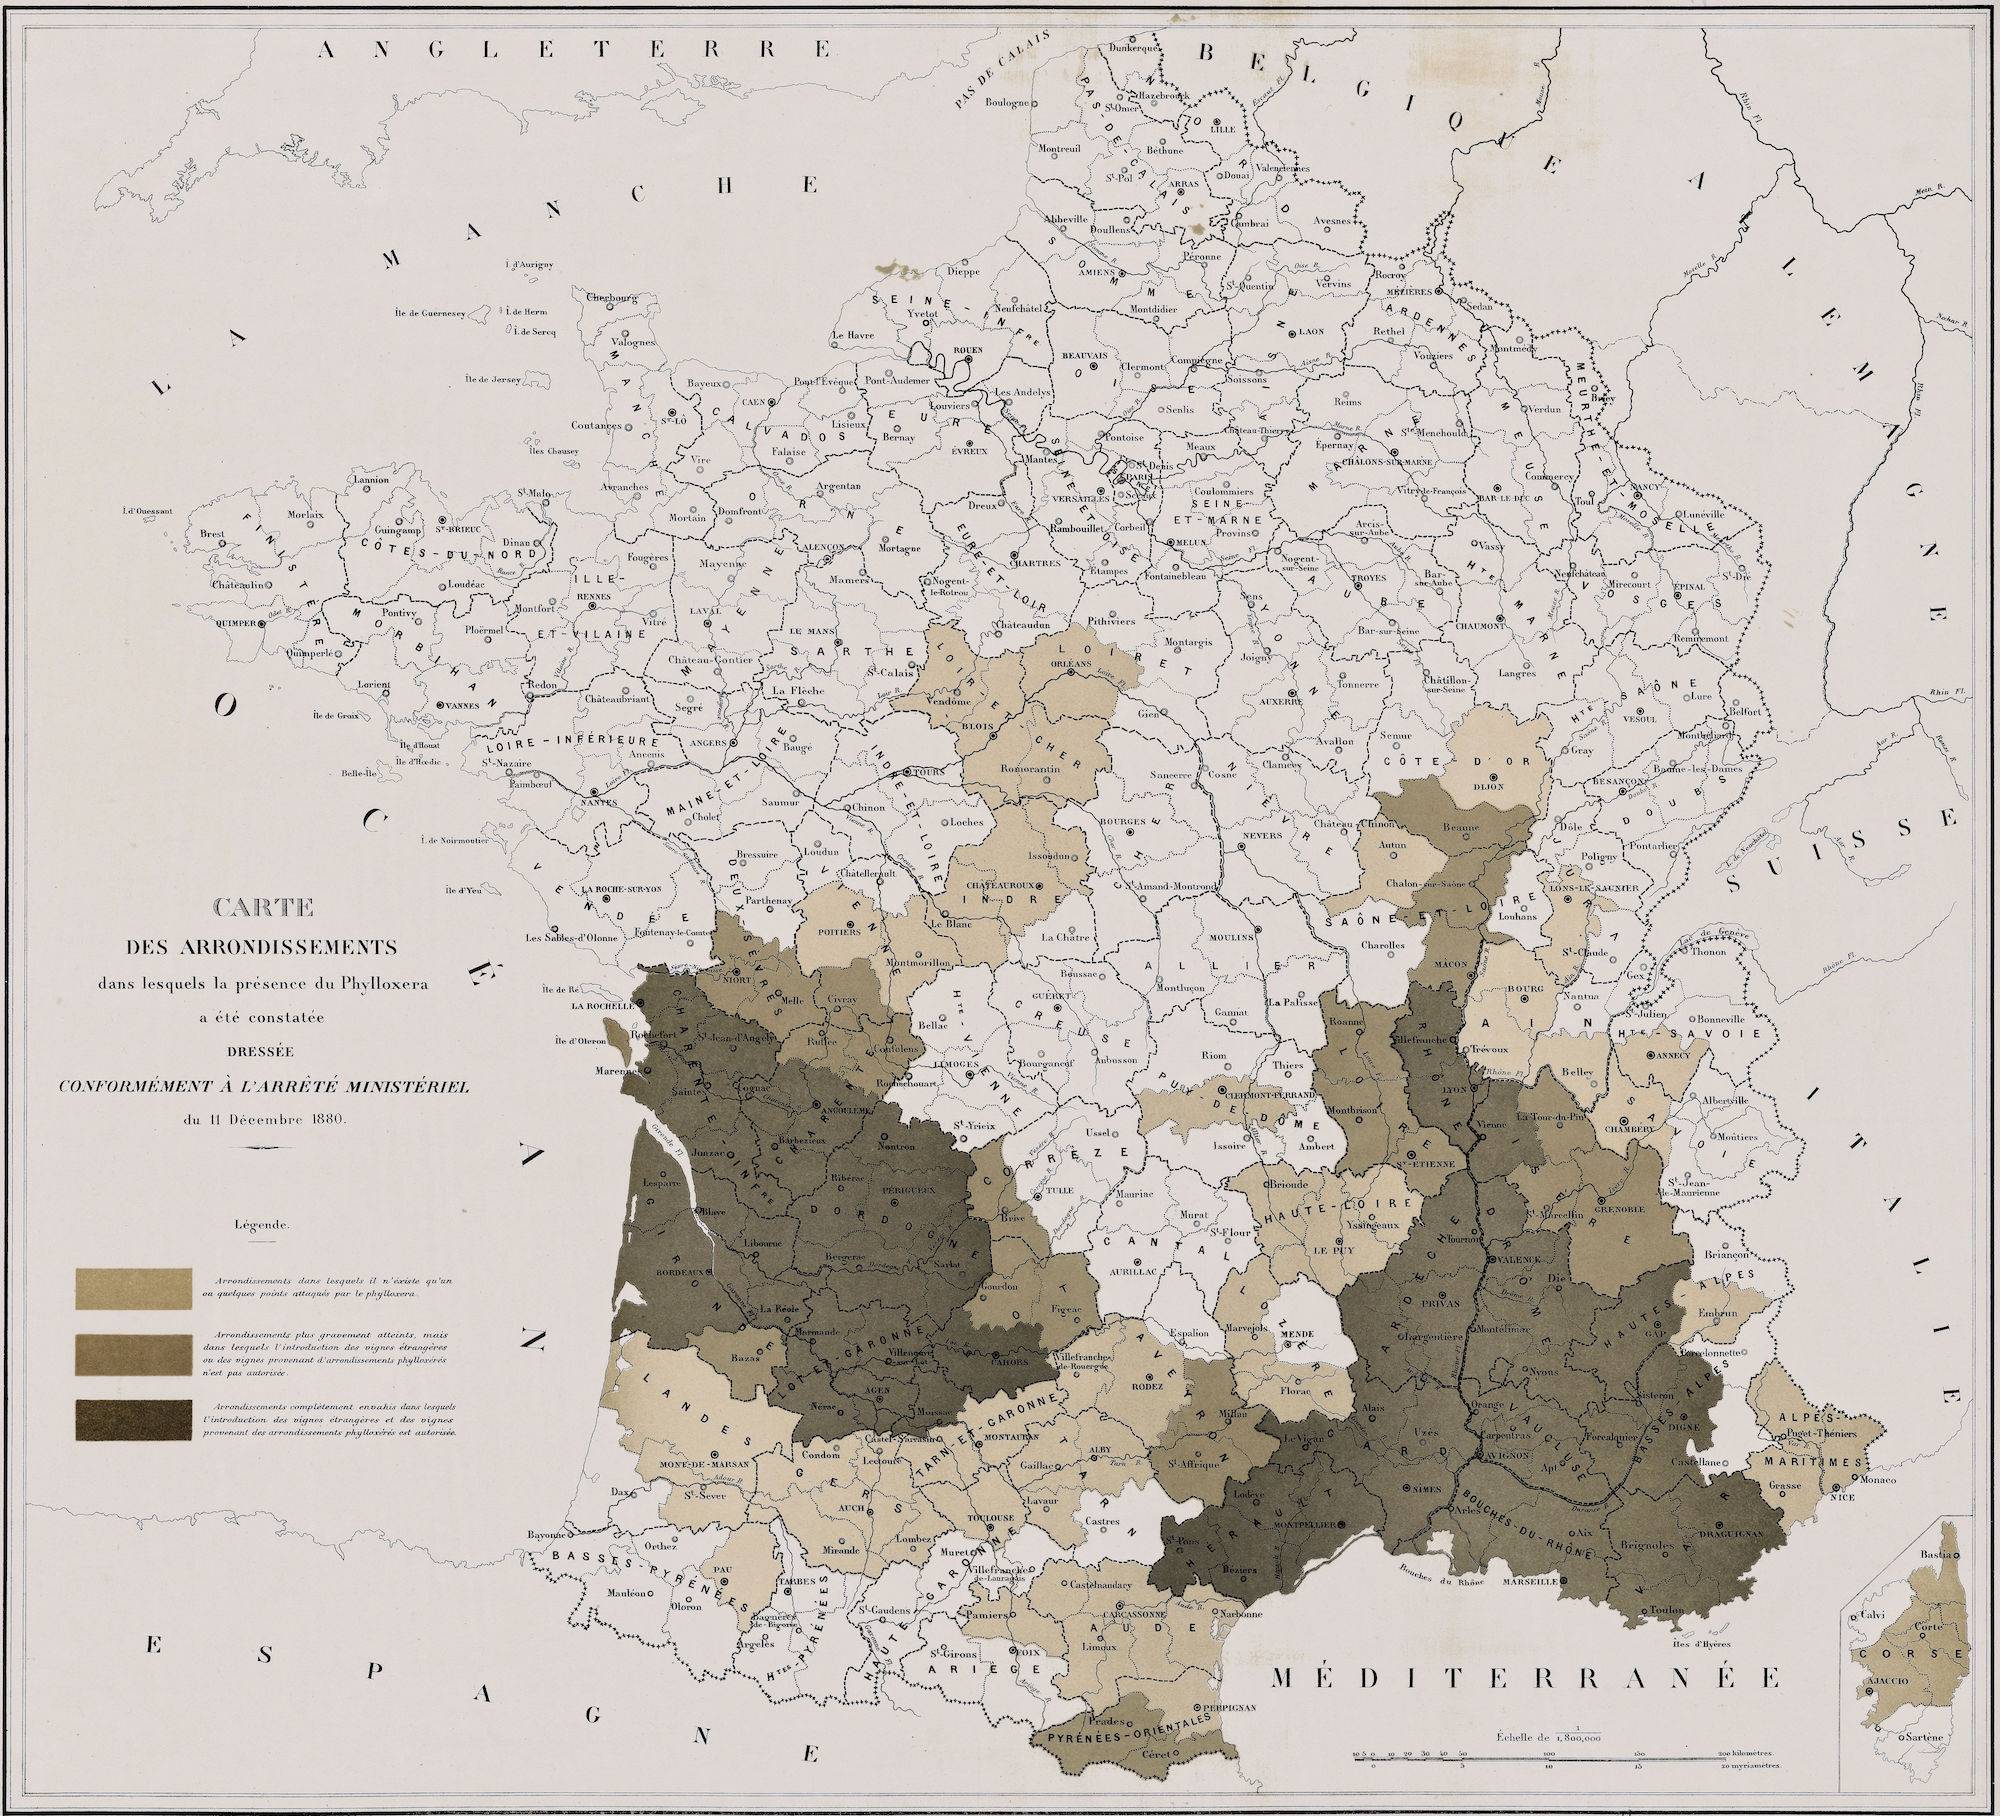 Carte des arrondissements dans lesquels la présence du phylloxera a été constatée, 1881 - source : Gallica-BnF